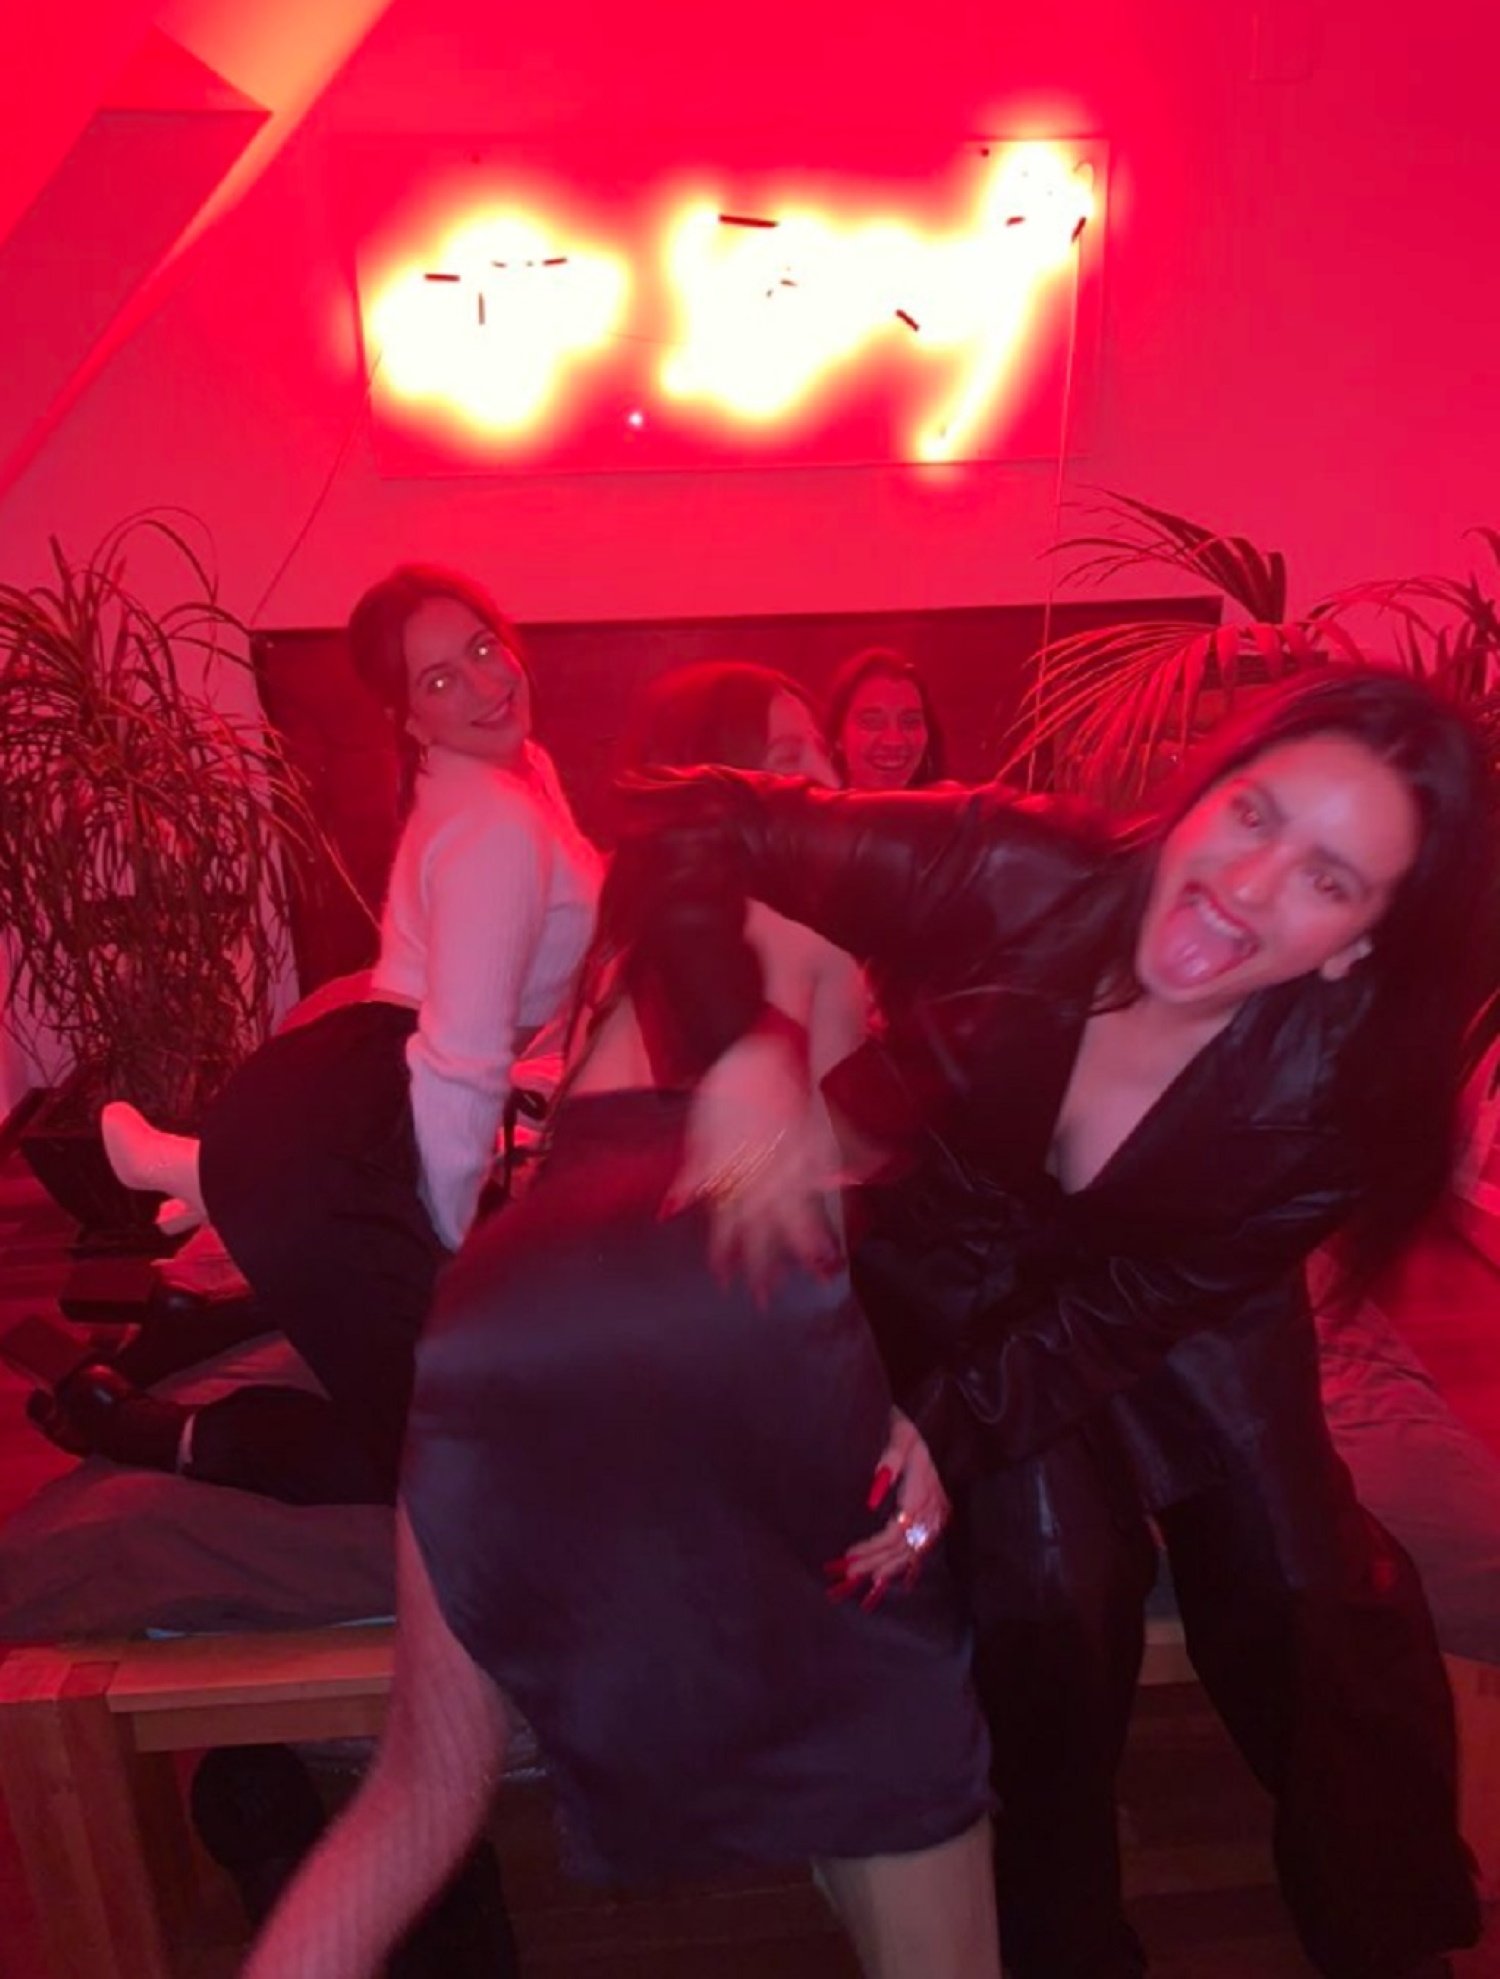 VÍDEO: El explosivo fin de año de Rosalía, de fiesta loca con amigas (perreo incluido)